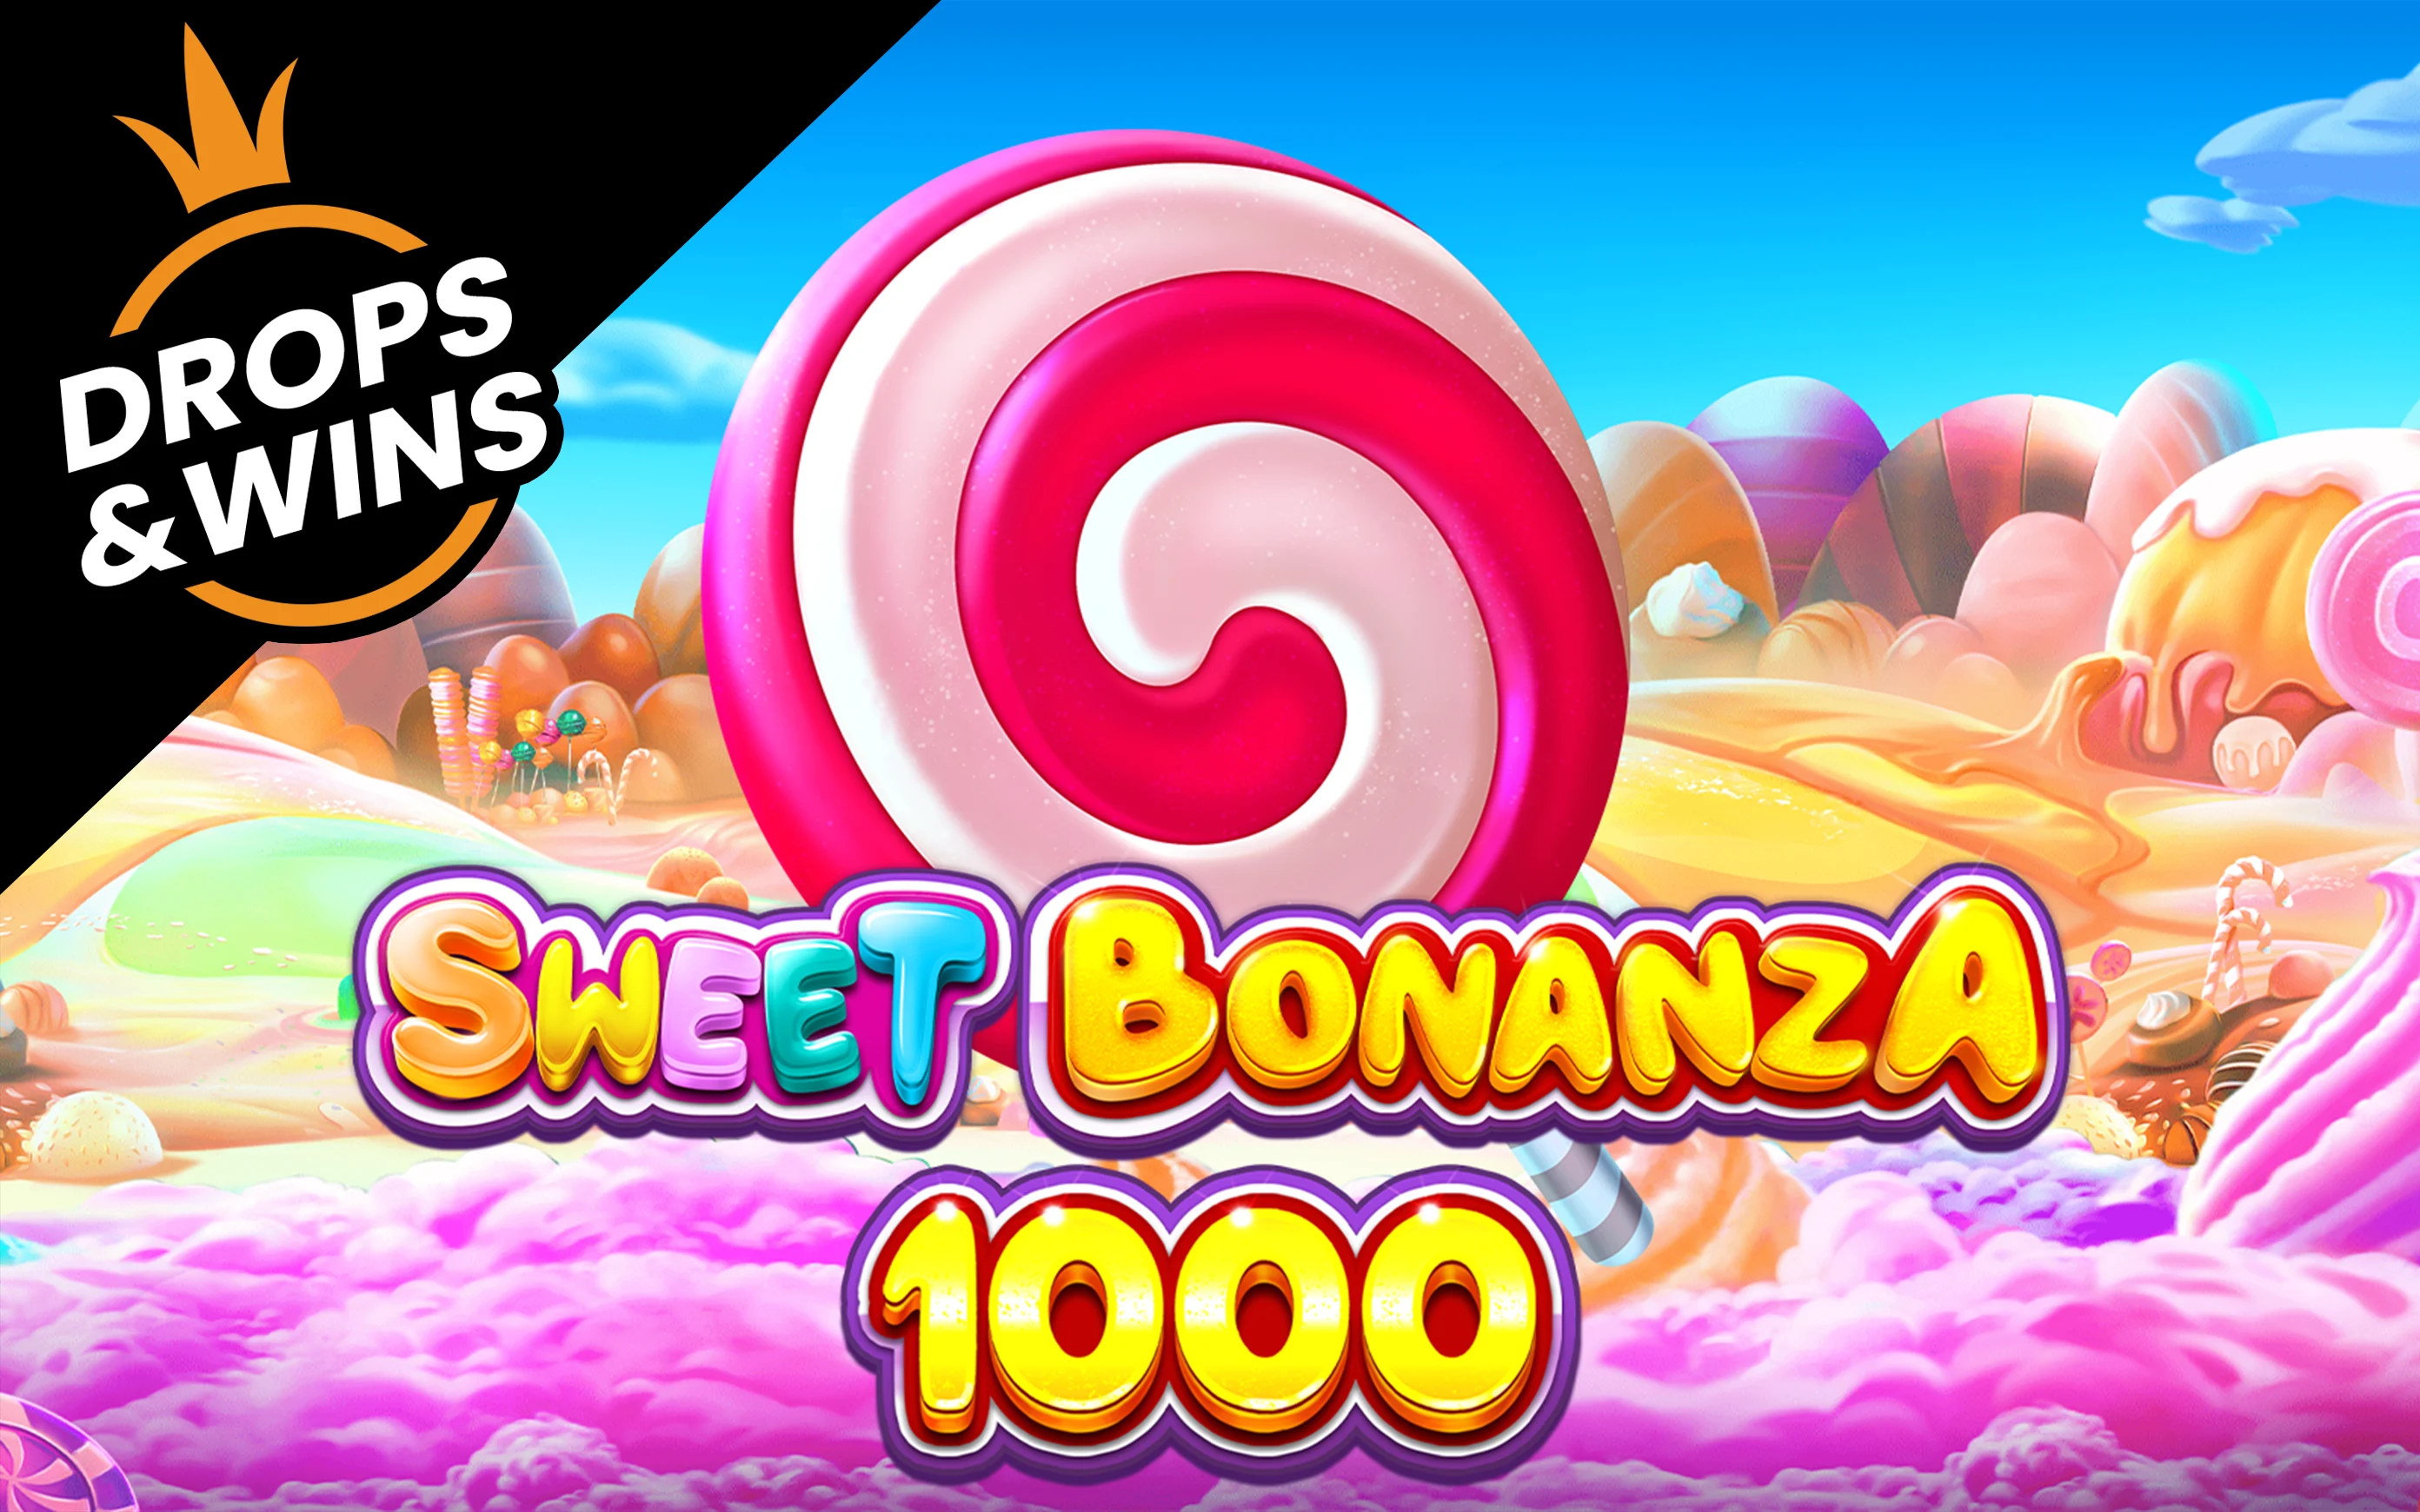 Gioca a Sweet Bonanza 1000 sul casino online Starcasino.be